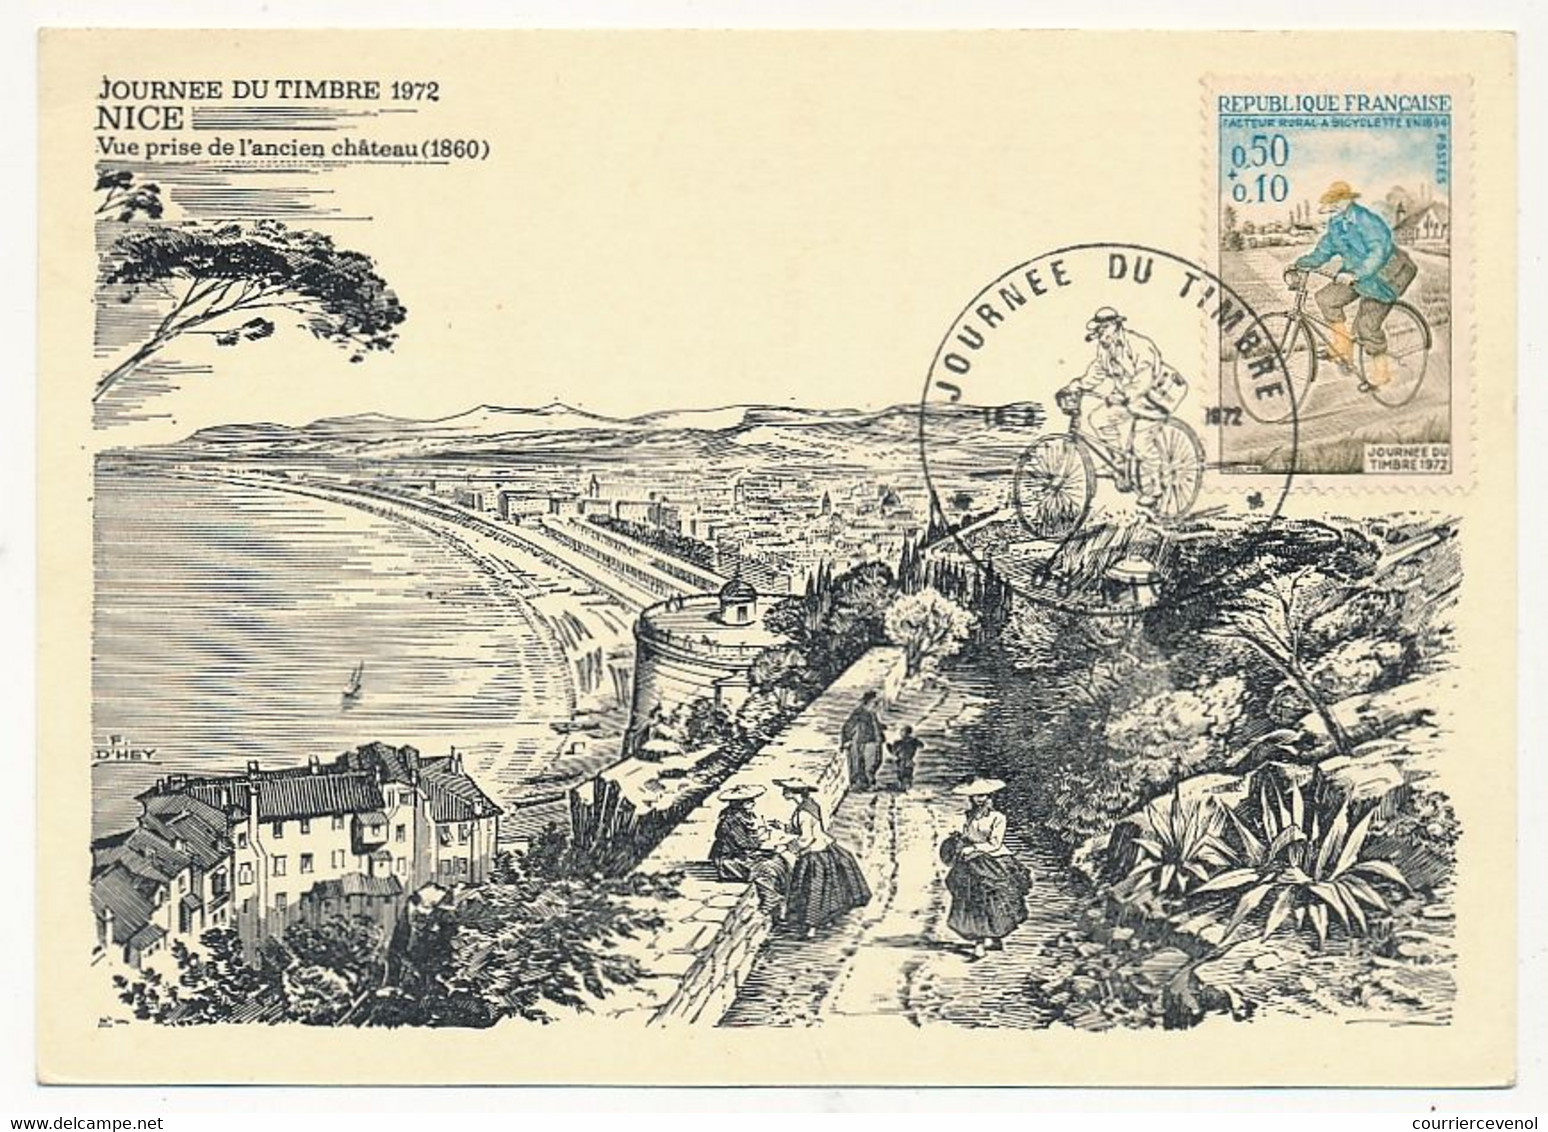 FRANCE - Carte Locale - Journée Du Timbre 1972 - Facteur Rural à Bicyclette - 06 NICE - 18 Mars 1972 - Tag Der Briefmarke